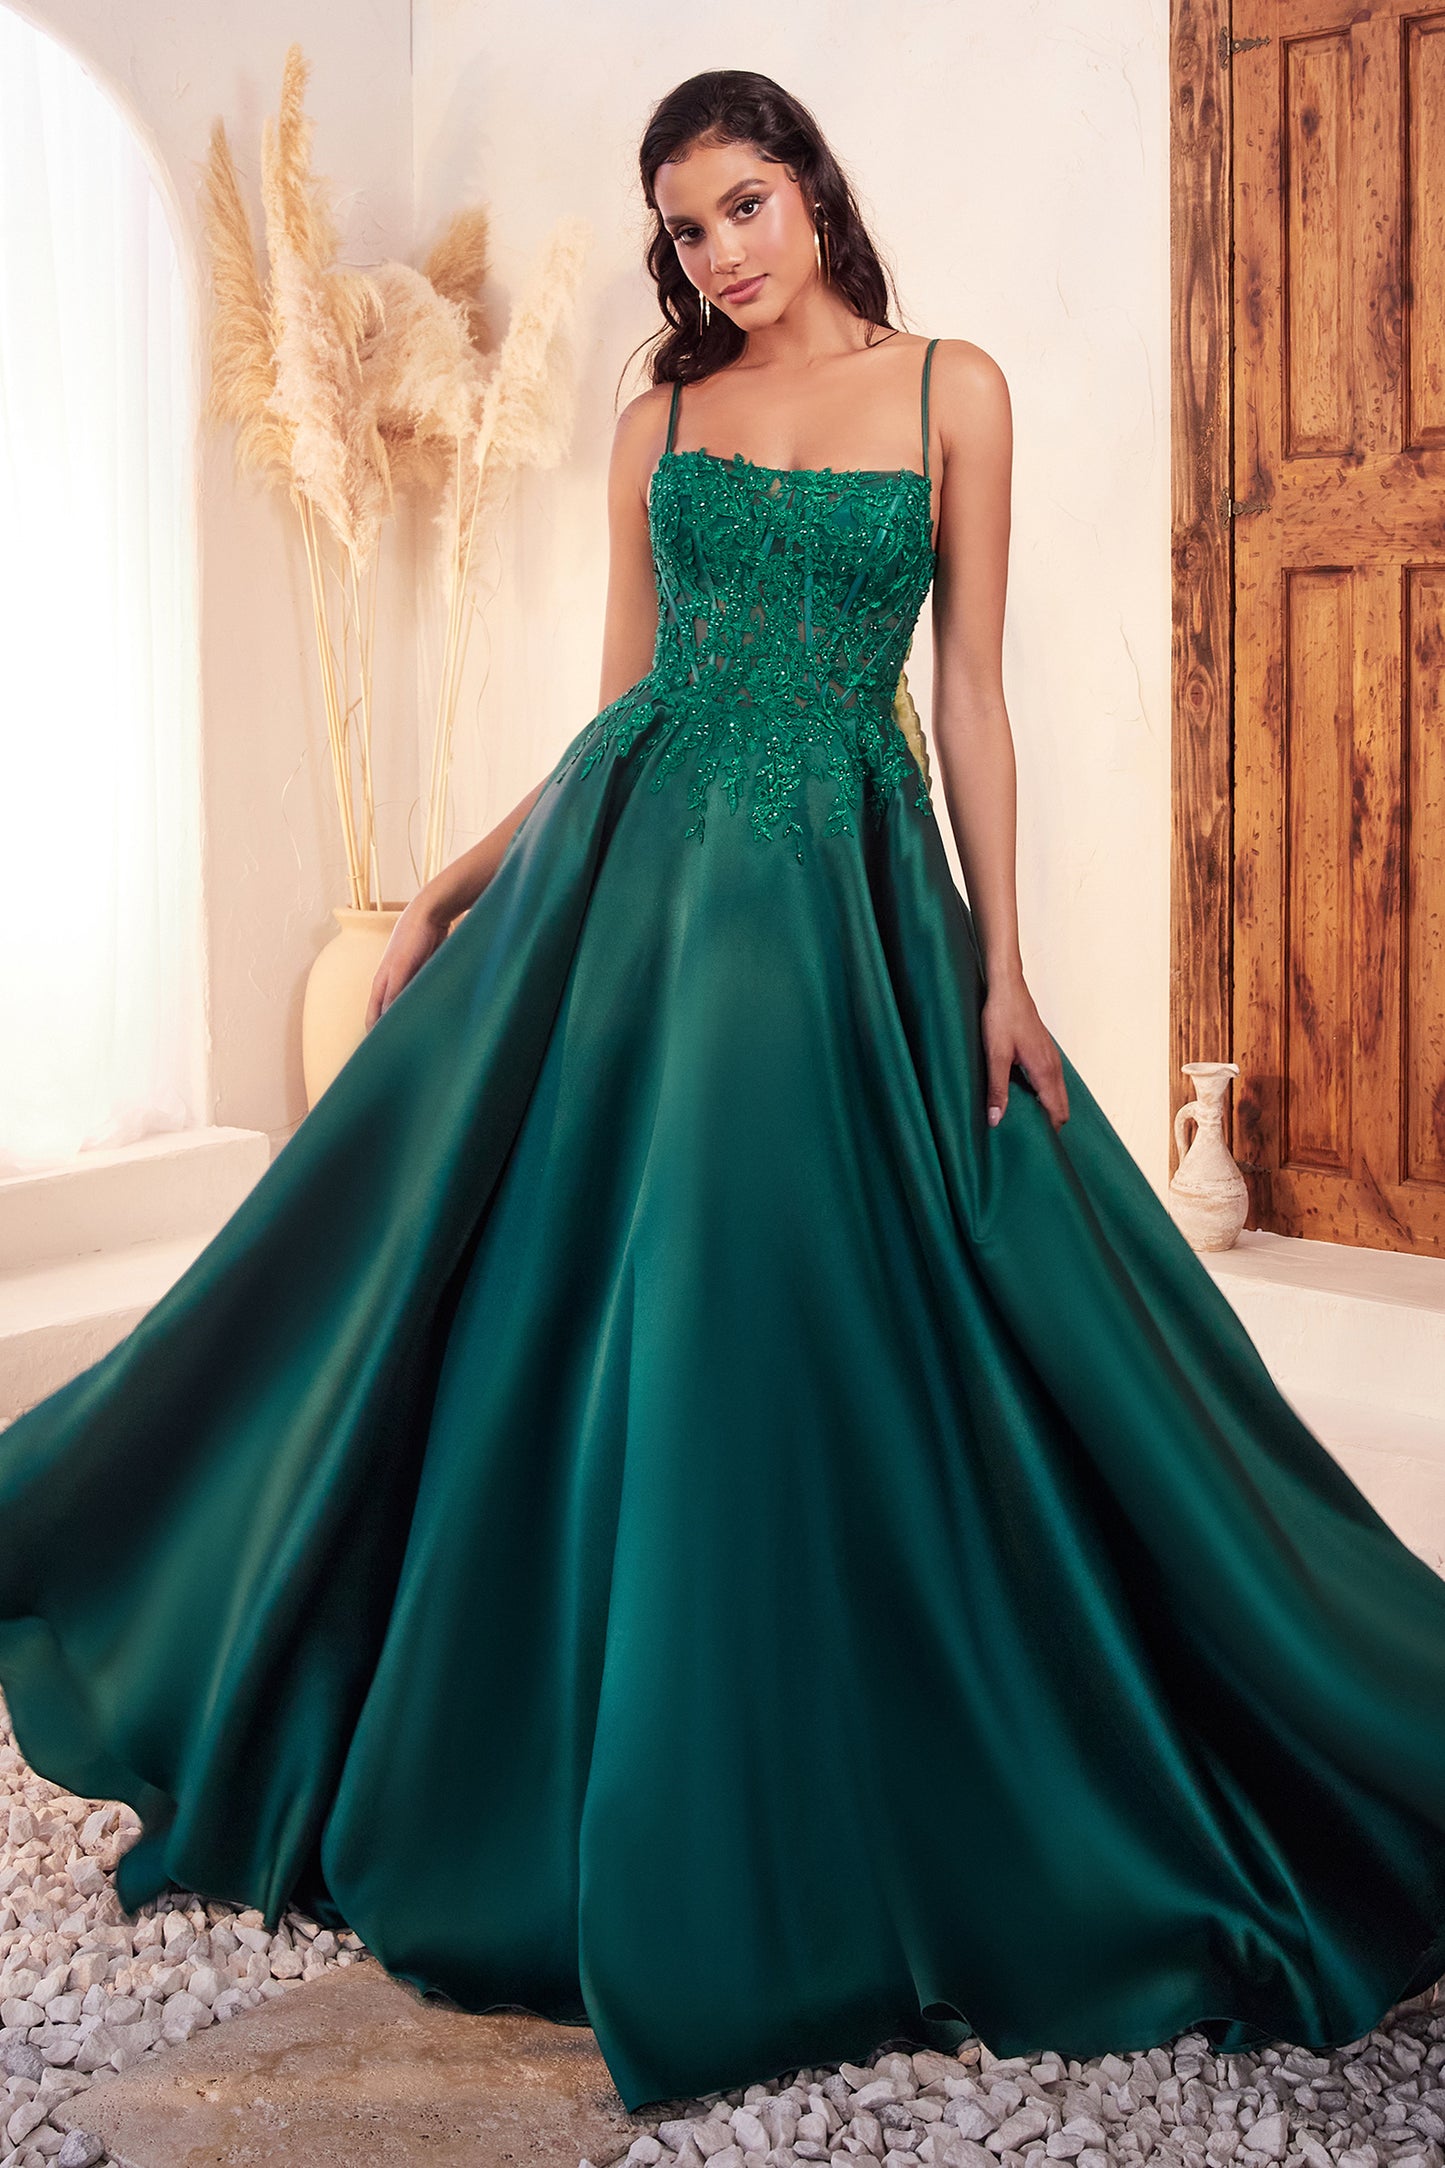 Vestido Con Detalles de Encaje en A color Esmeralda.